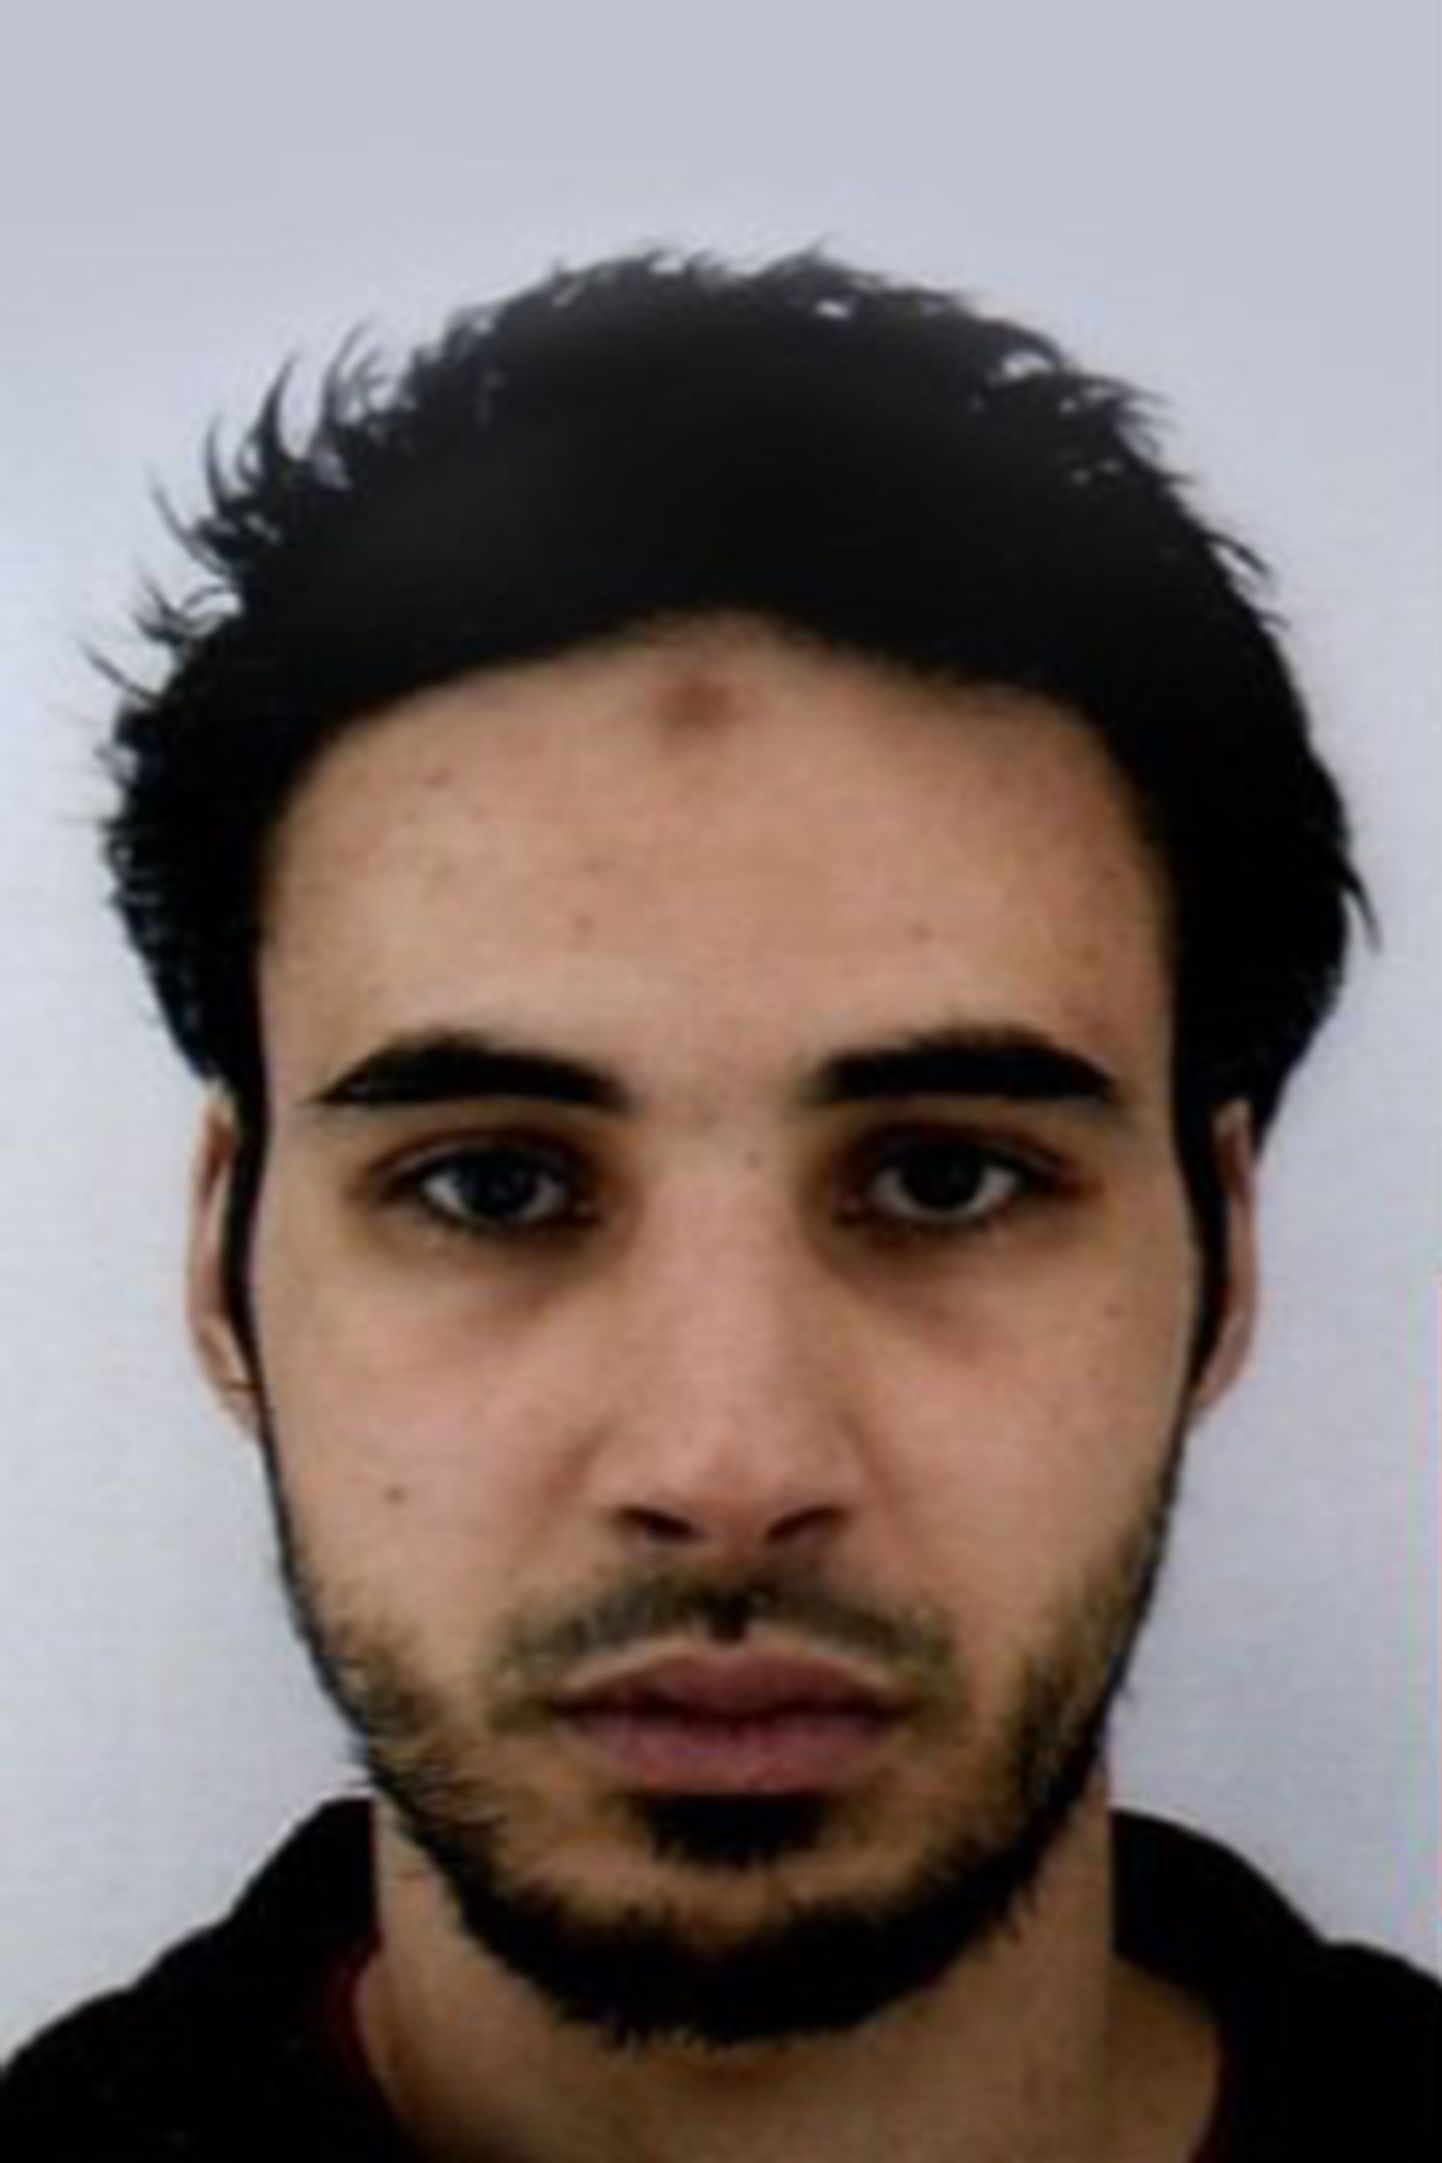 Полиция Франции объявила в розыск 29-летнего Шерифа Шекатта, подозреваемого в нападении на рождественский рынок в Страсбурге, в ходе которого погибли три человека и пострадали 13.